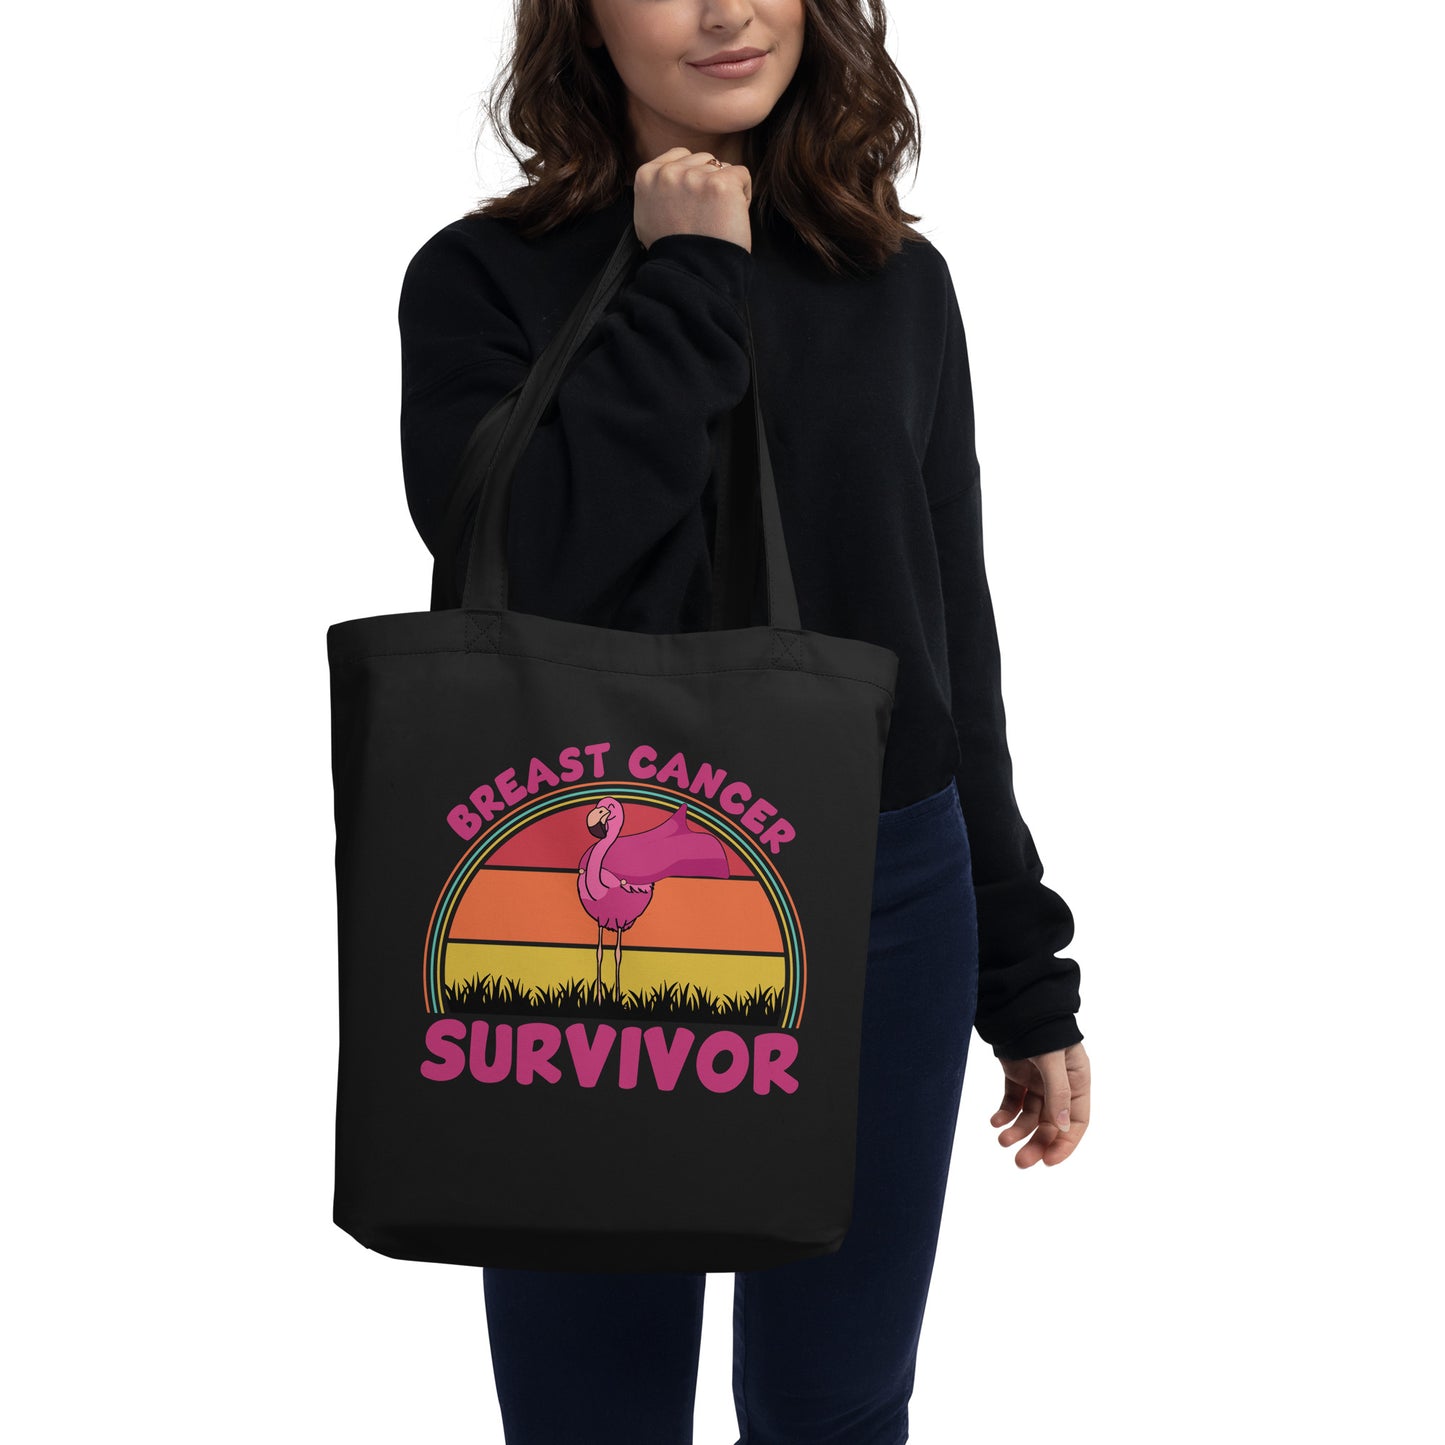 Breast Cancer Survivor Eco Tote Bag